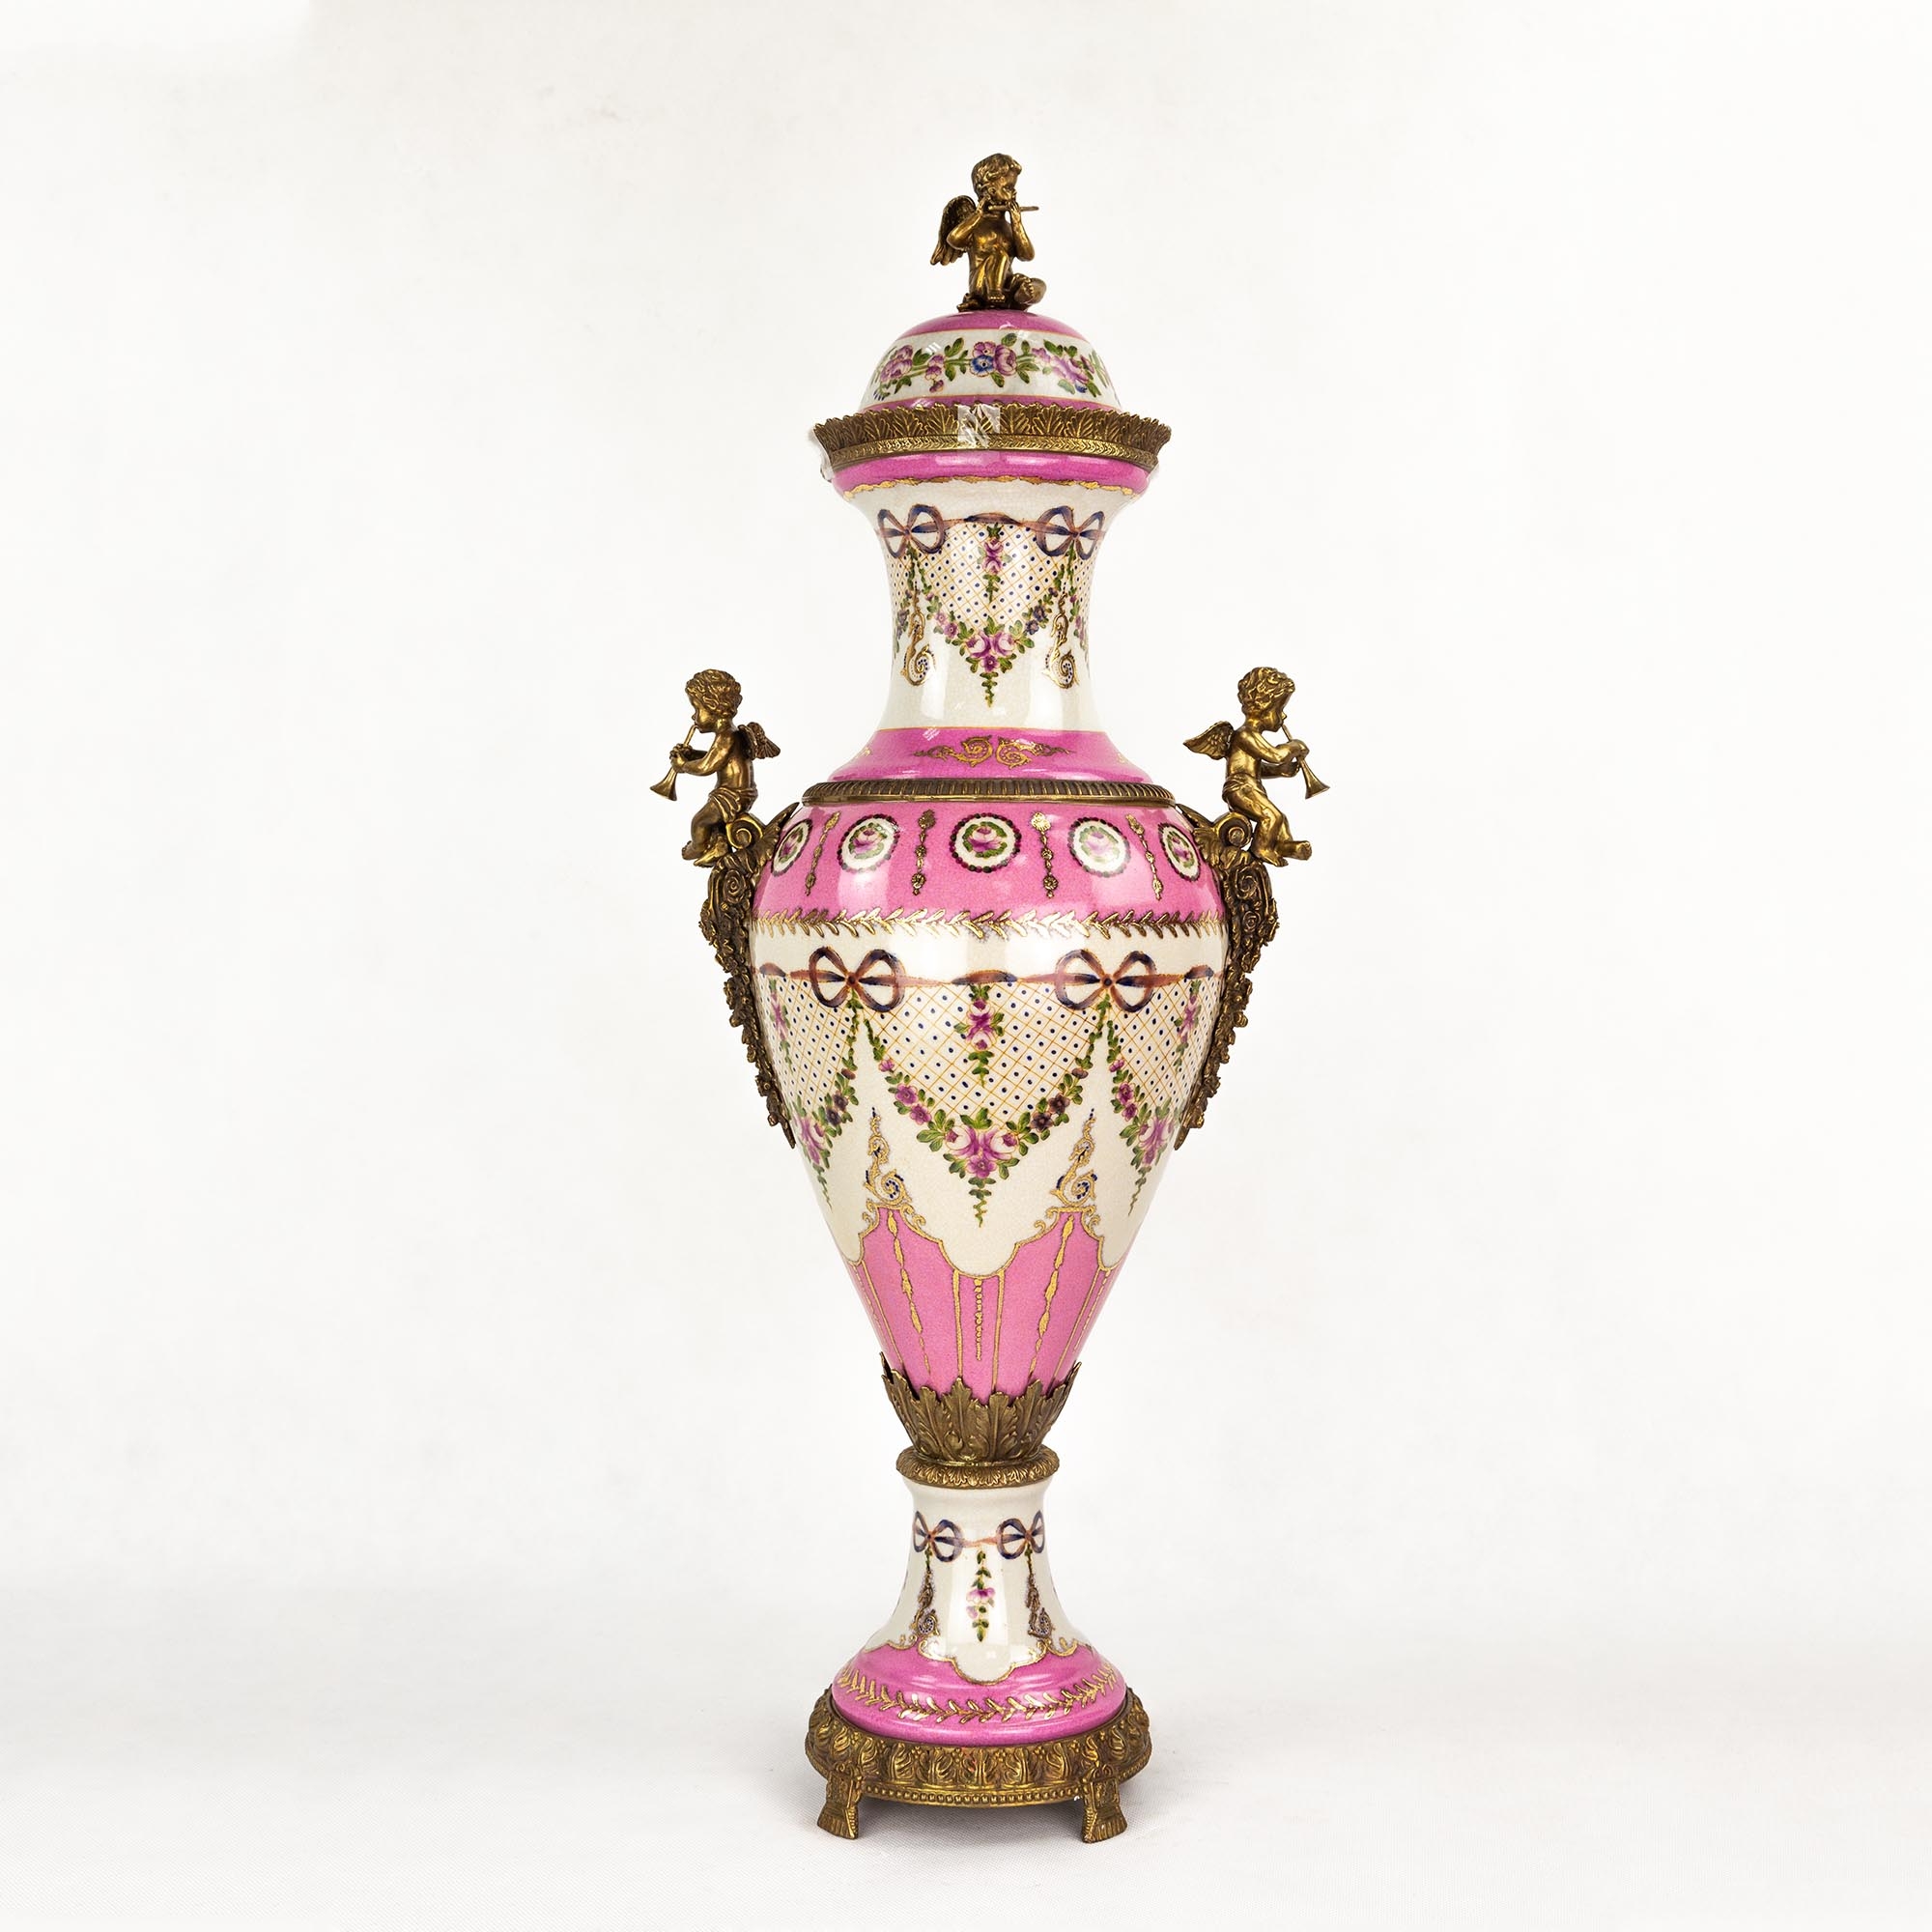 Ваза Wah luen handicraft фарфоровая с ангелами, розовая, 33х23х77 см ваза glasar фарфоровая с крышкой и бронзовыми элементами голубая 39 37см